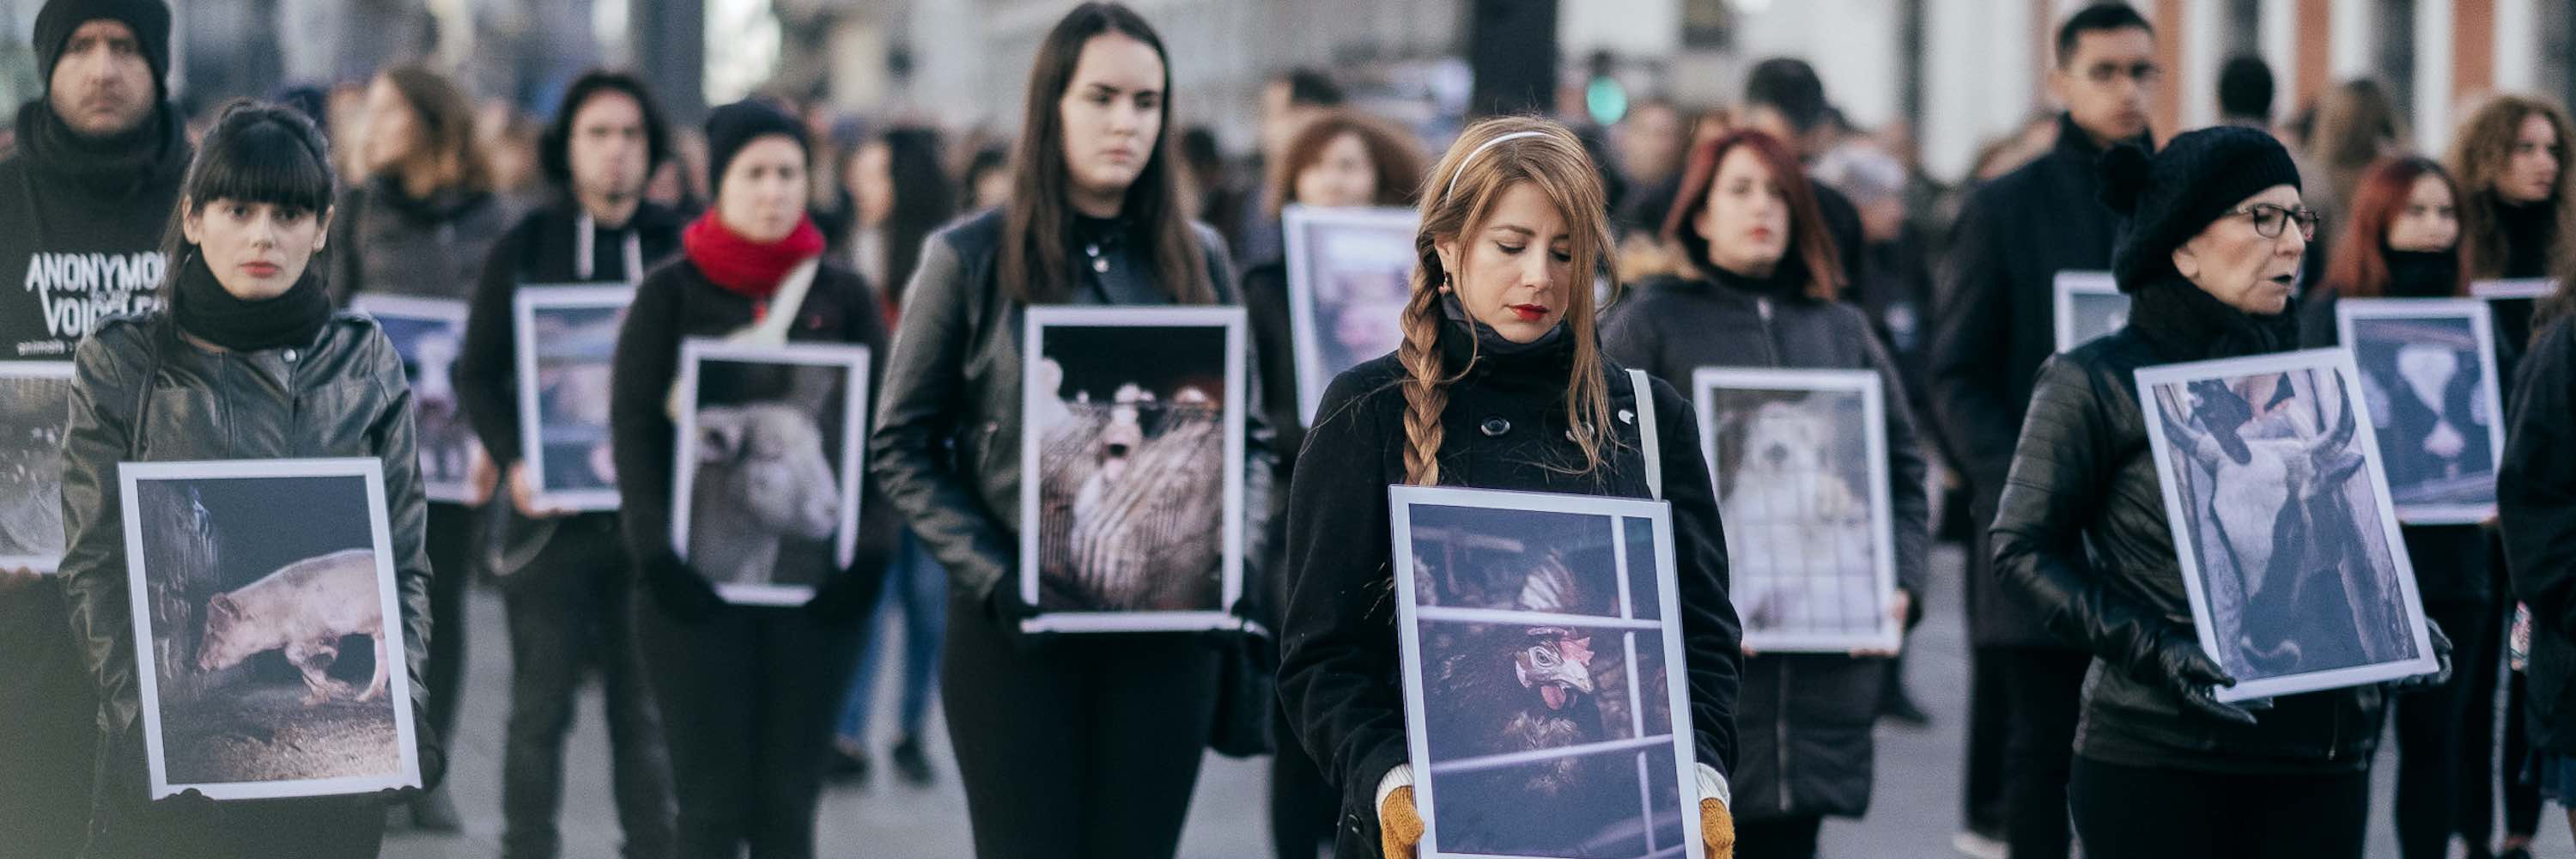 Personas sosteniendo pancartas en una protesta contra el maltrato animal